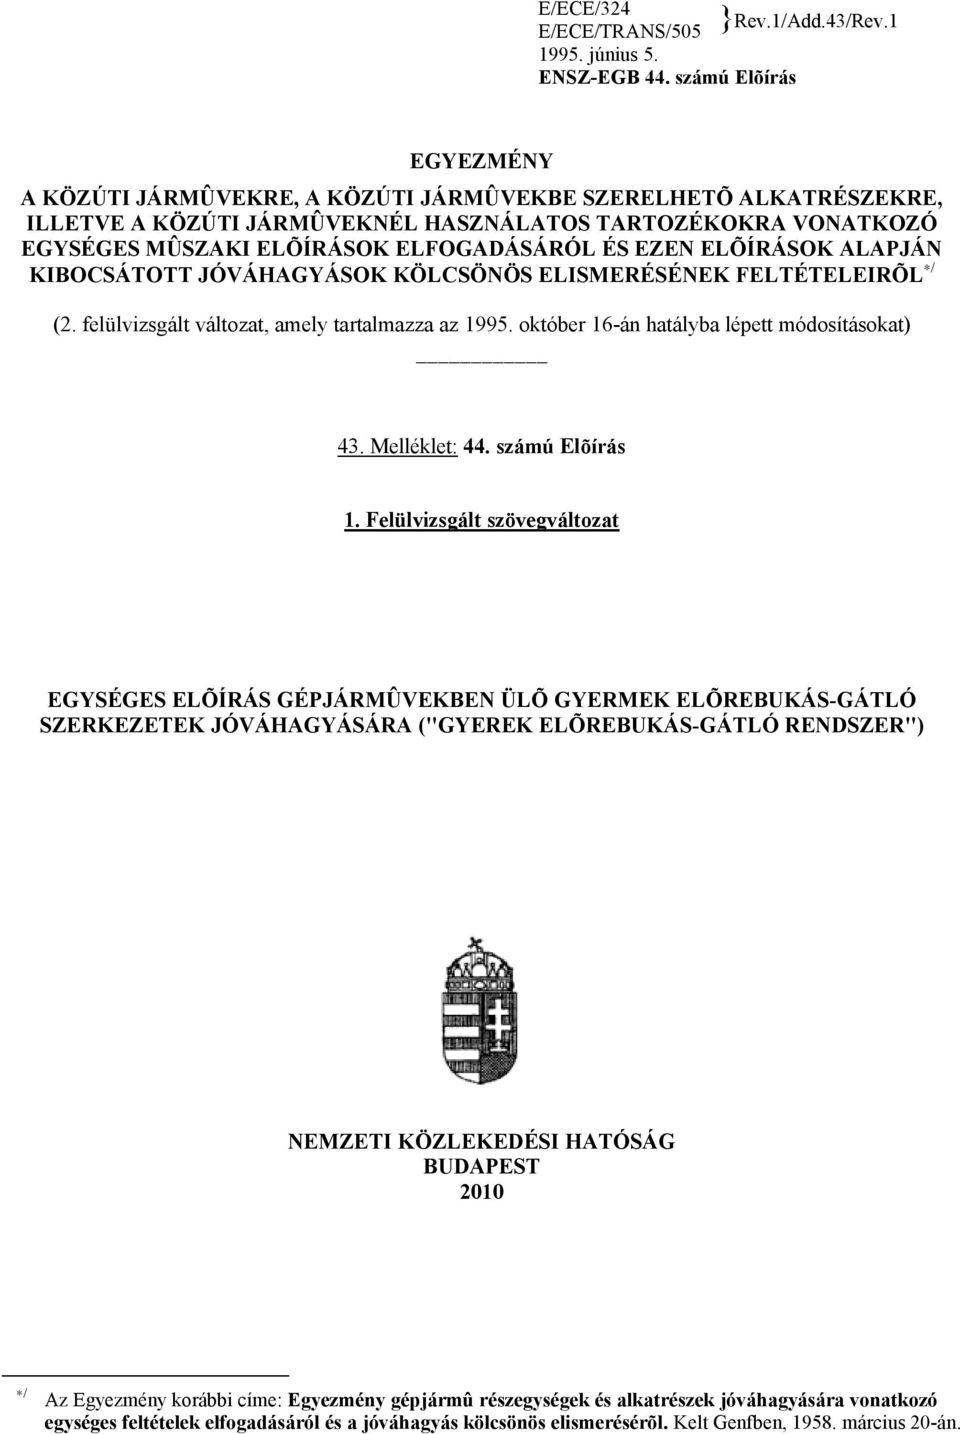 EZEN ELÕÍRÁSOK ALAPJÁN KIBOCSÁTOTT JÓVÁHAGYÁSOK KÖLCSÖNÖS ELISMERÉSÉNEK FELTÉTELEIRÕL / (2. felülvizsgált változat, amely tartalmazza az 1995. október 16-án hatályba lépett módosításokat) 43.